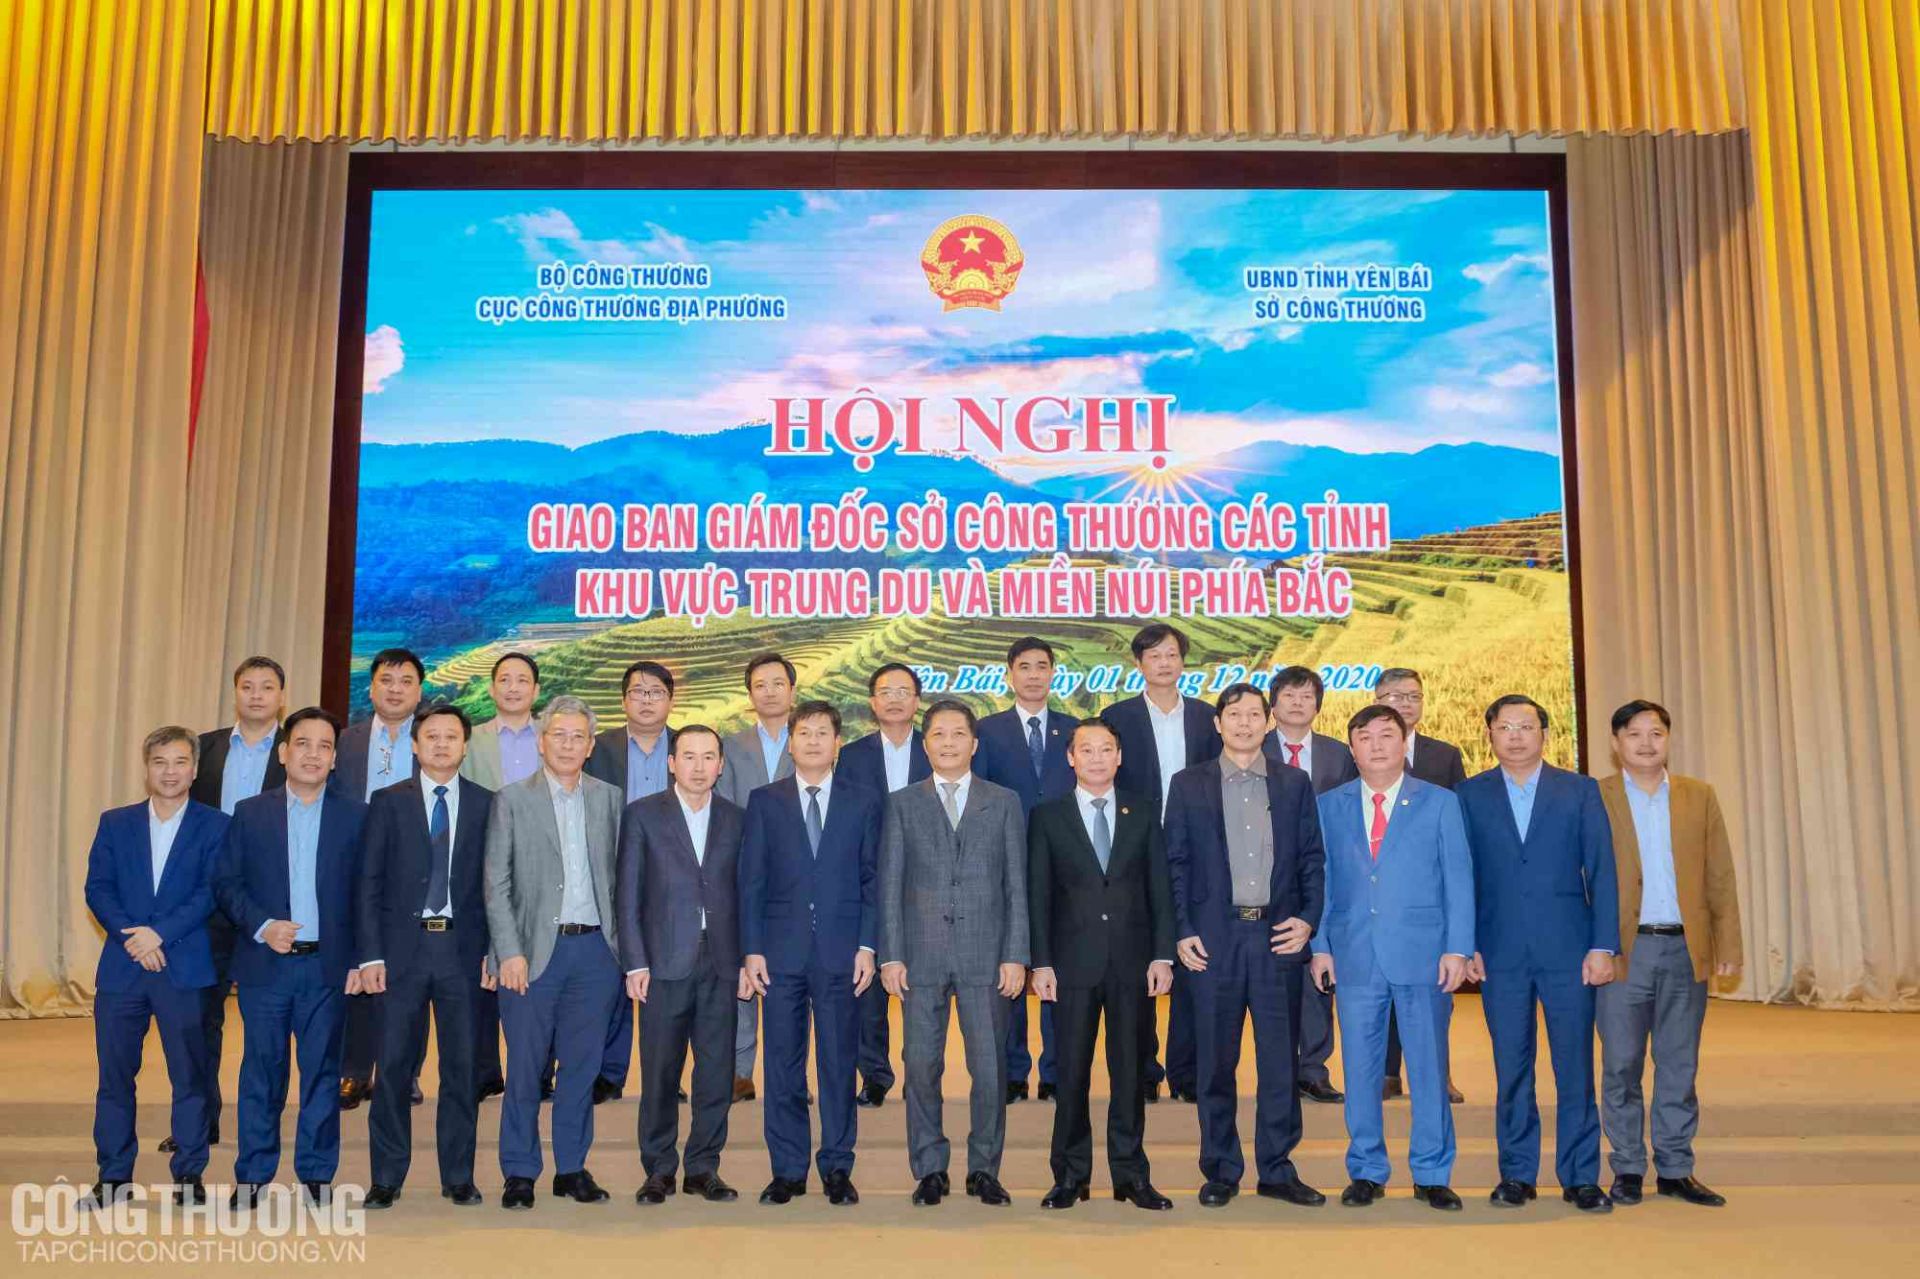 Hội nghị Giao ban Giám đốc Sở Công Thương các tỉnh, thành phố khu vực trung du và miền núi phía Bắc năm 2020